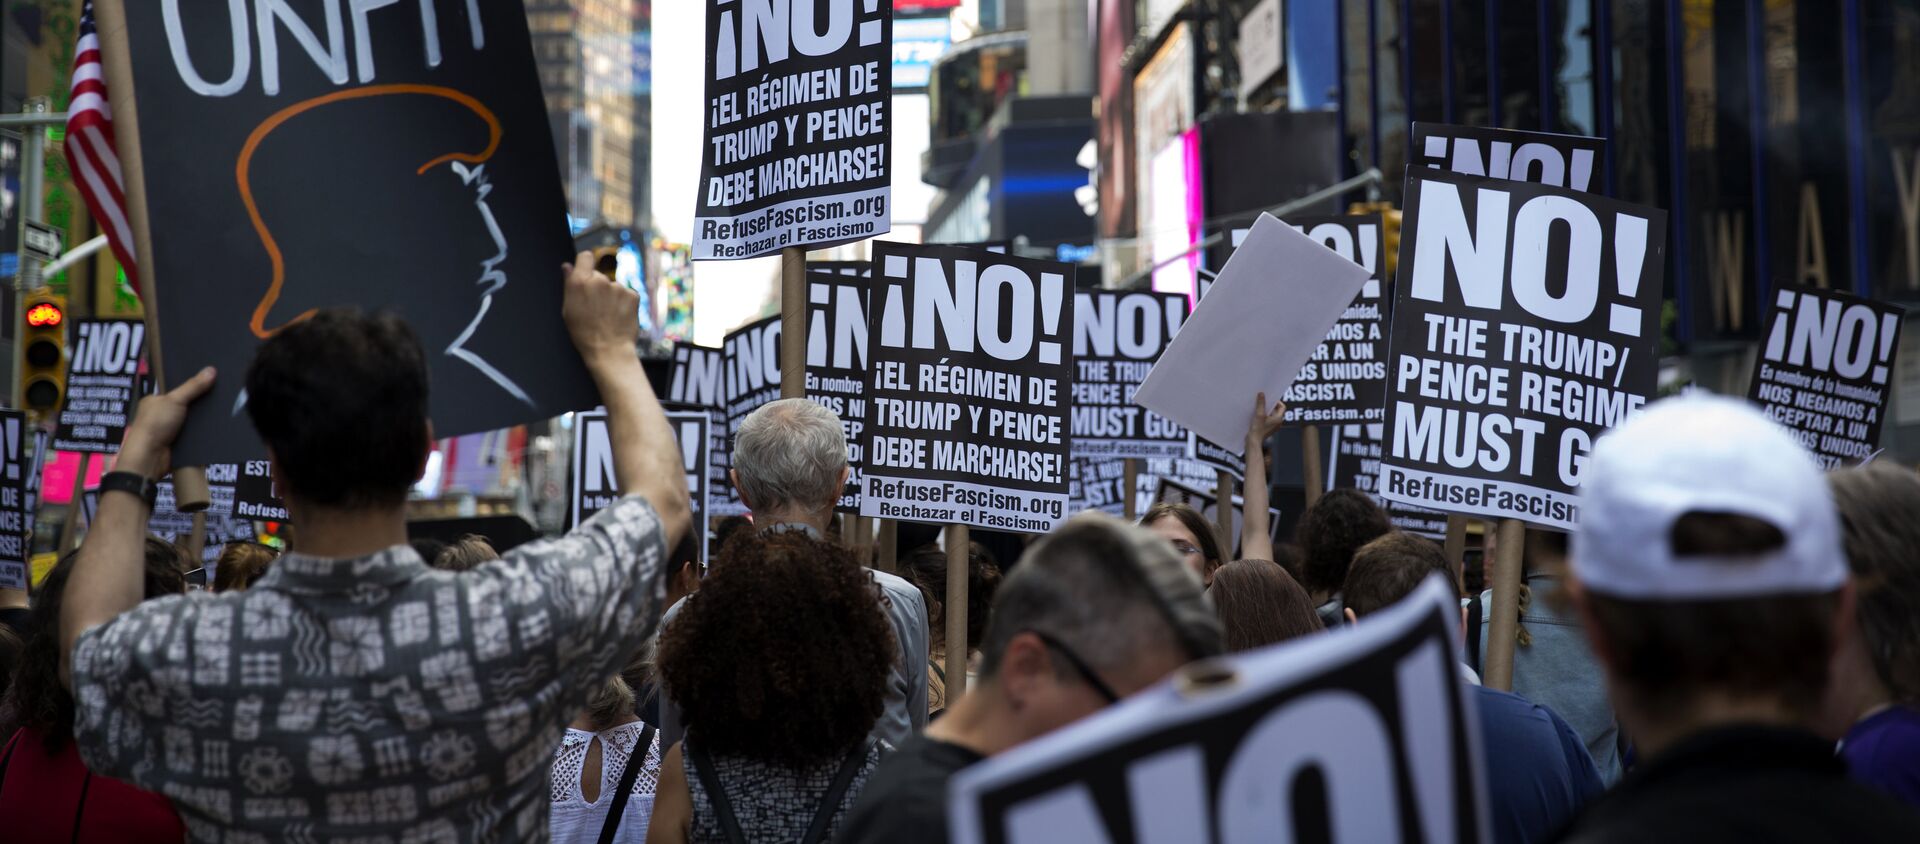 Una manifestación contra Donald Trump en Nueva York, EEUU (archivo) - Sputnik Mundo, 1920, 12.07.2018